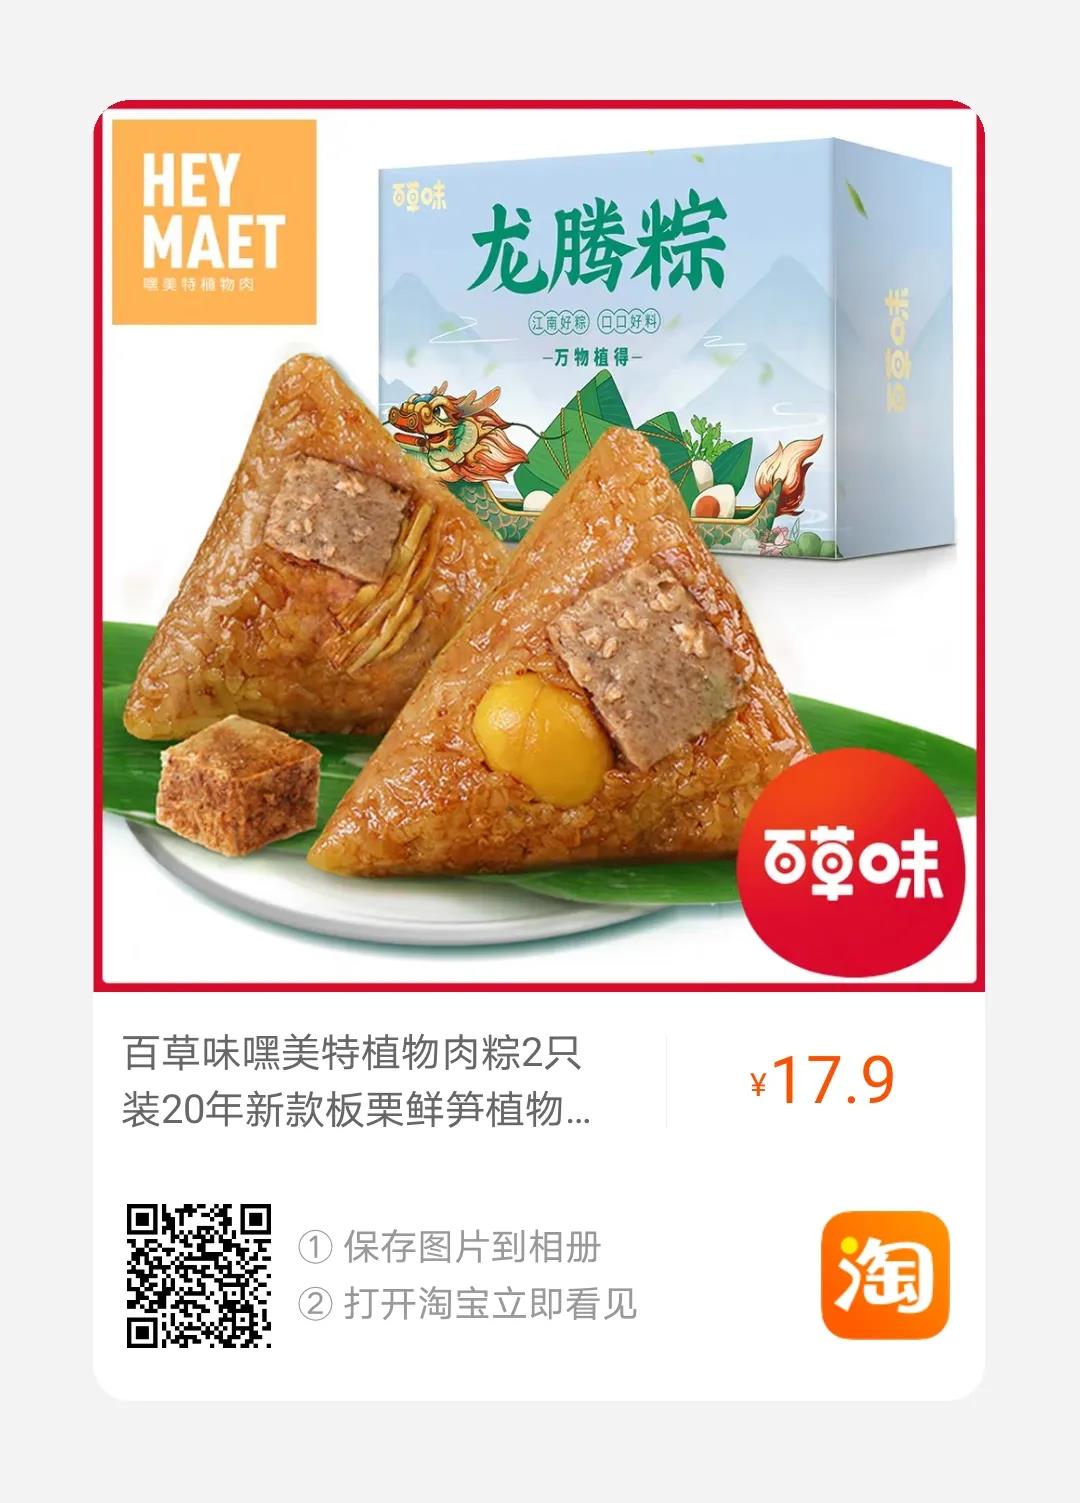 72 百草味联合国内初创植物肉企业“Hey Maet”，推第三款植物肉粽“万物植得 龙腾粽”